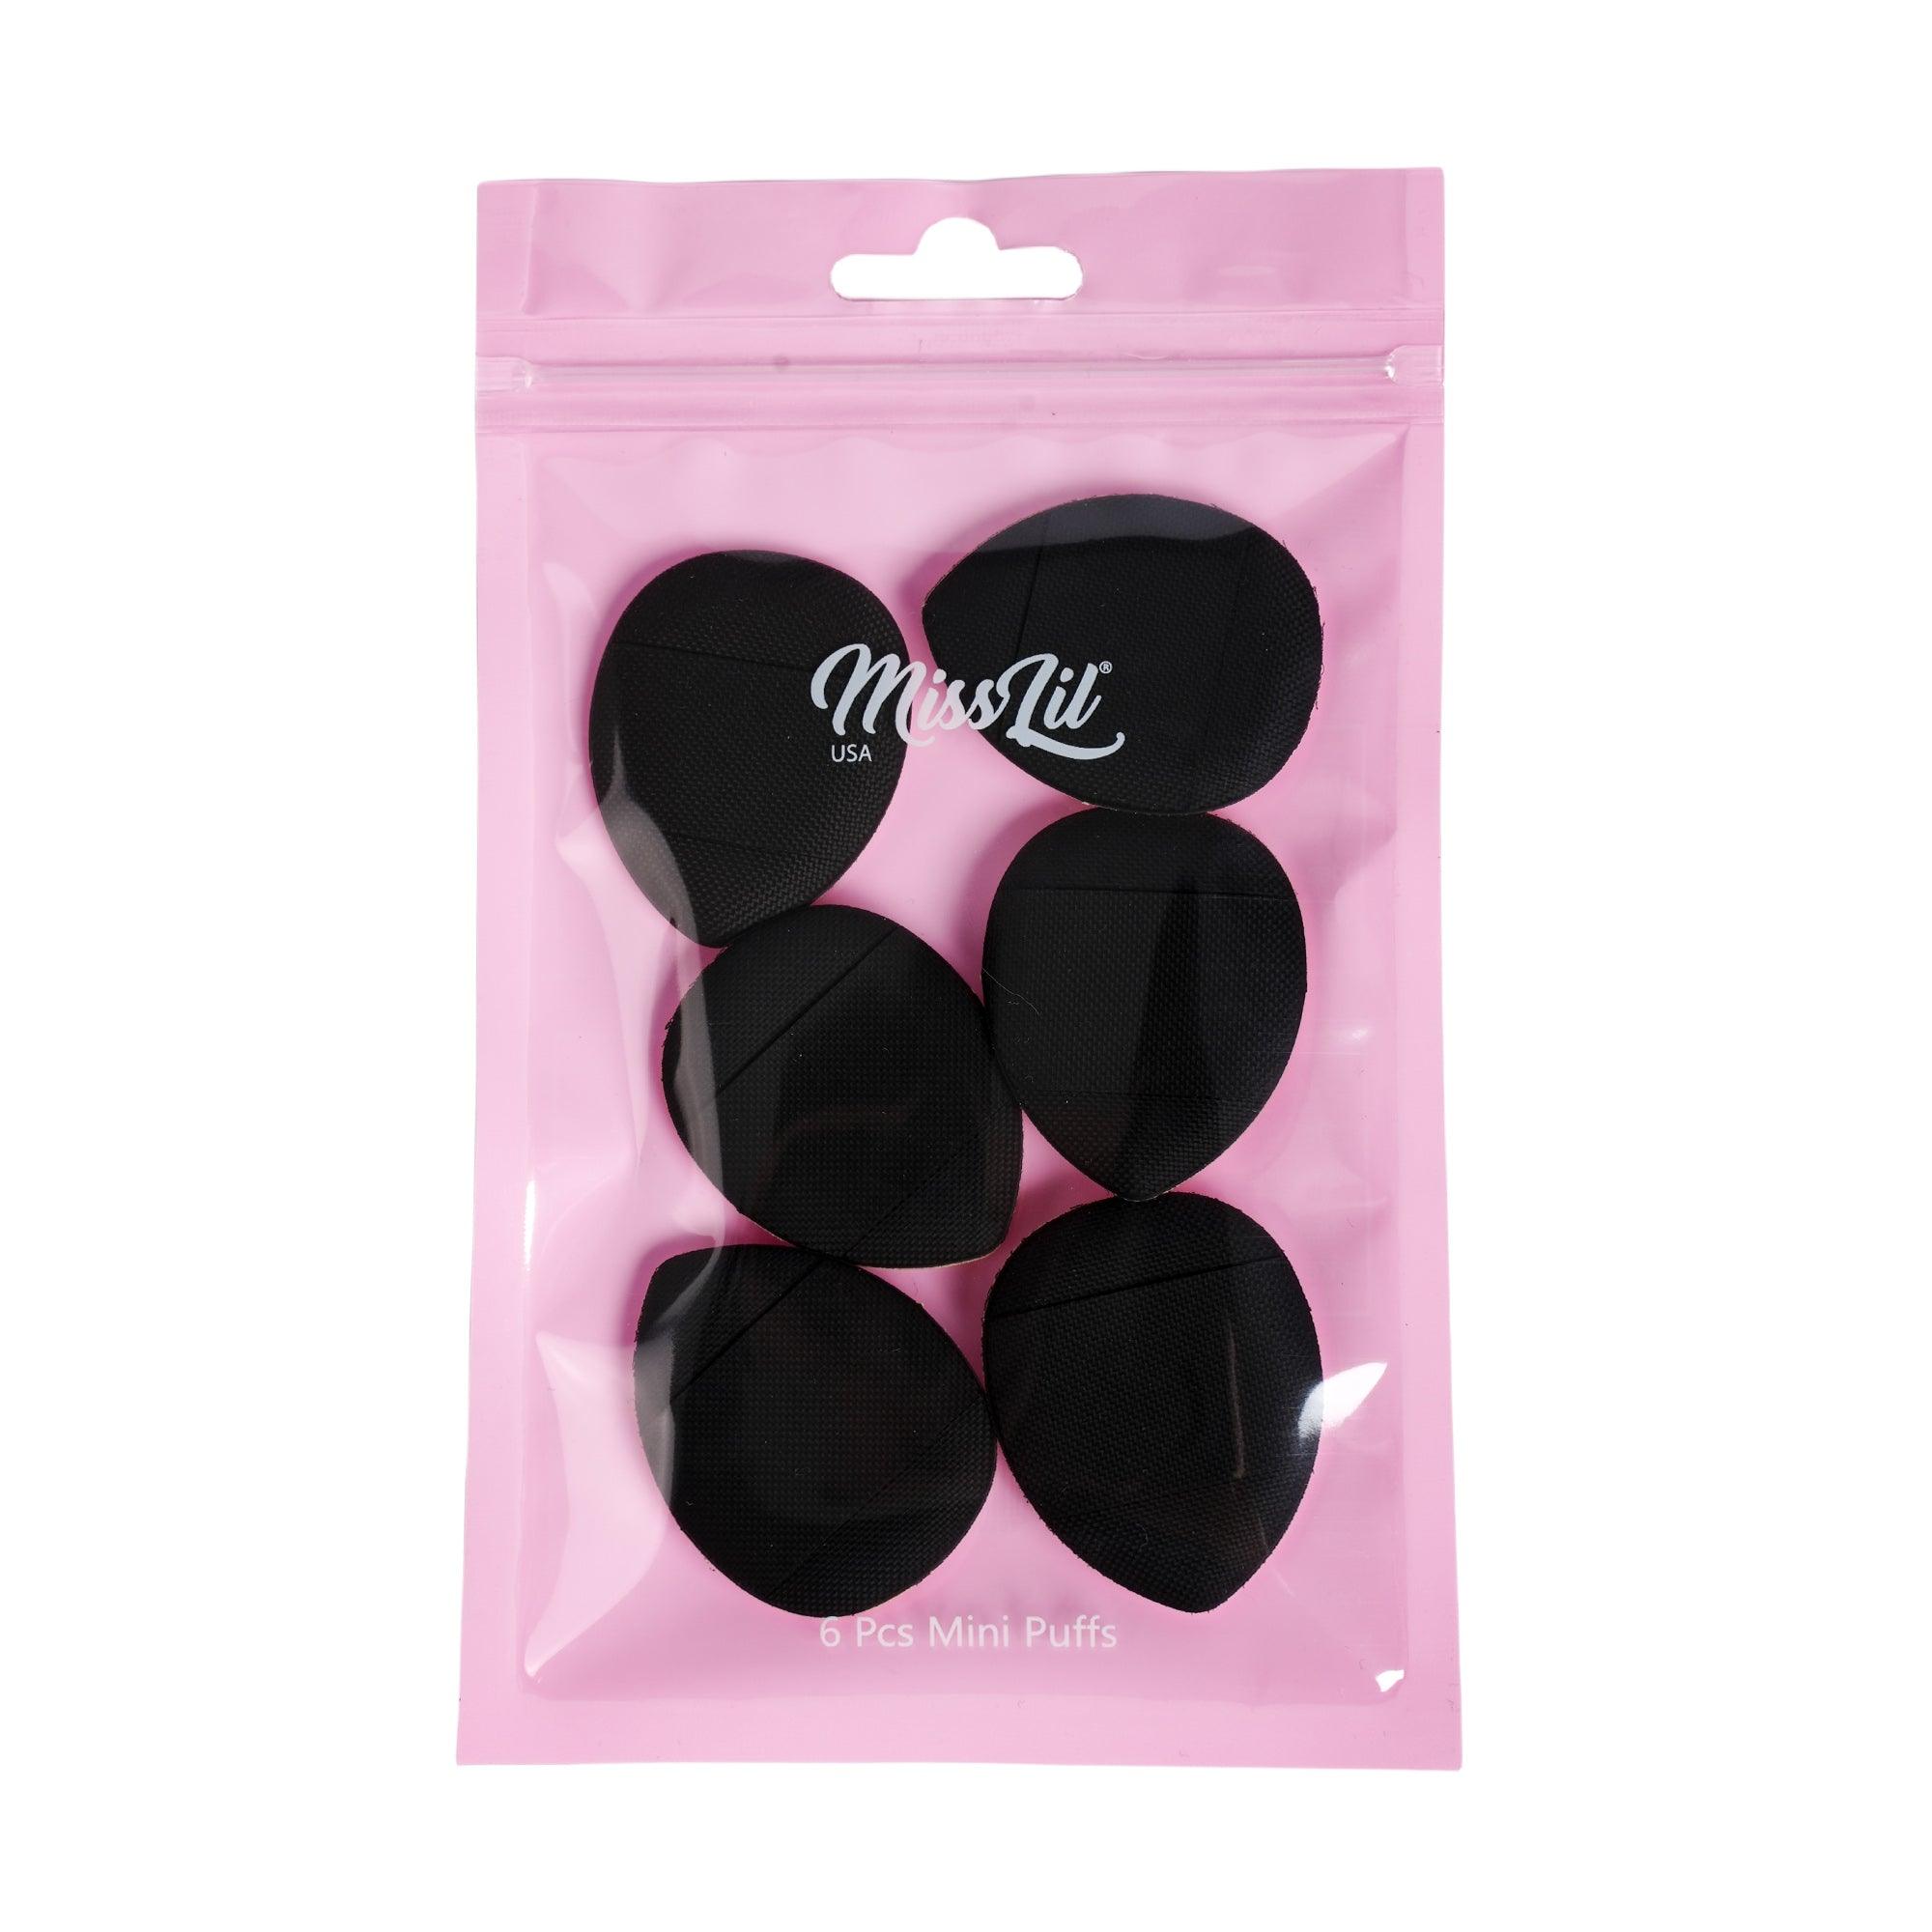 Mini triangle makeup puffs black - Miss Lil USA Wholesale